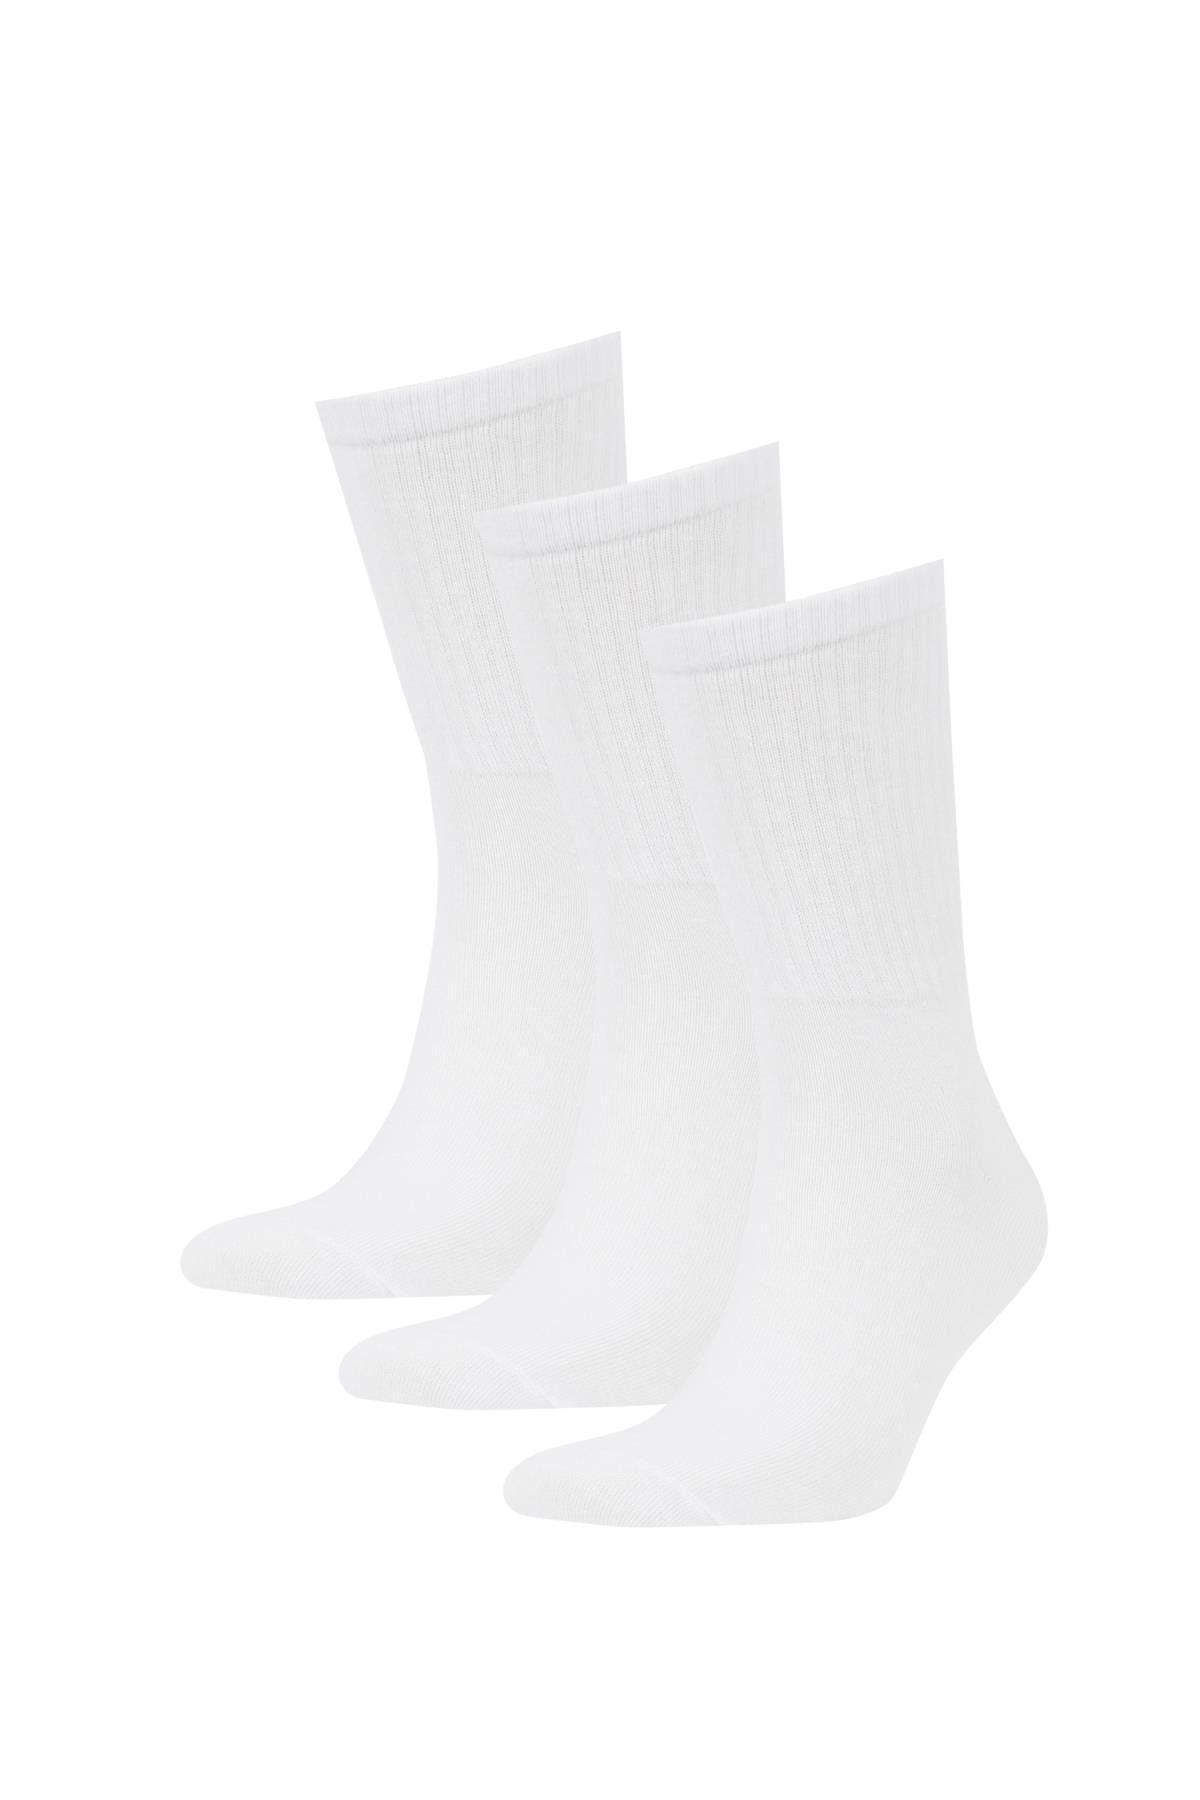 Defacto Erkek 3'lü Pamuklu Uzun Çorap Z0806azns